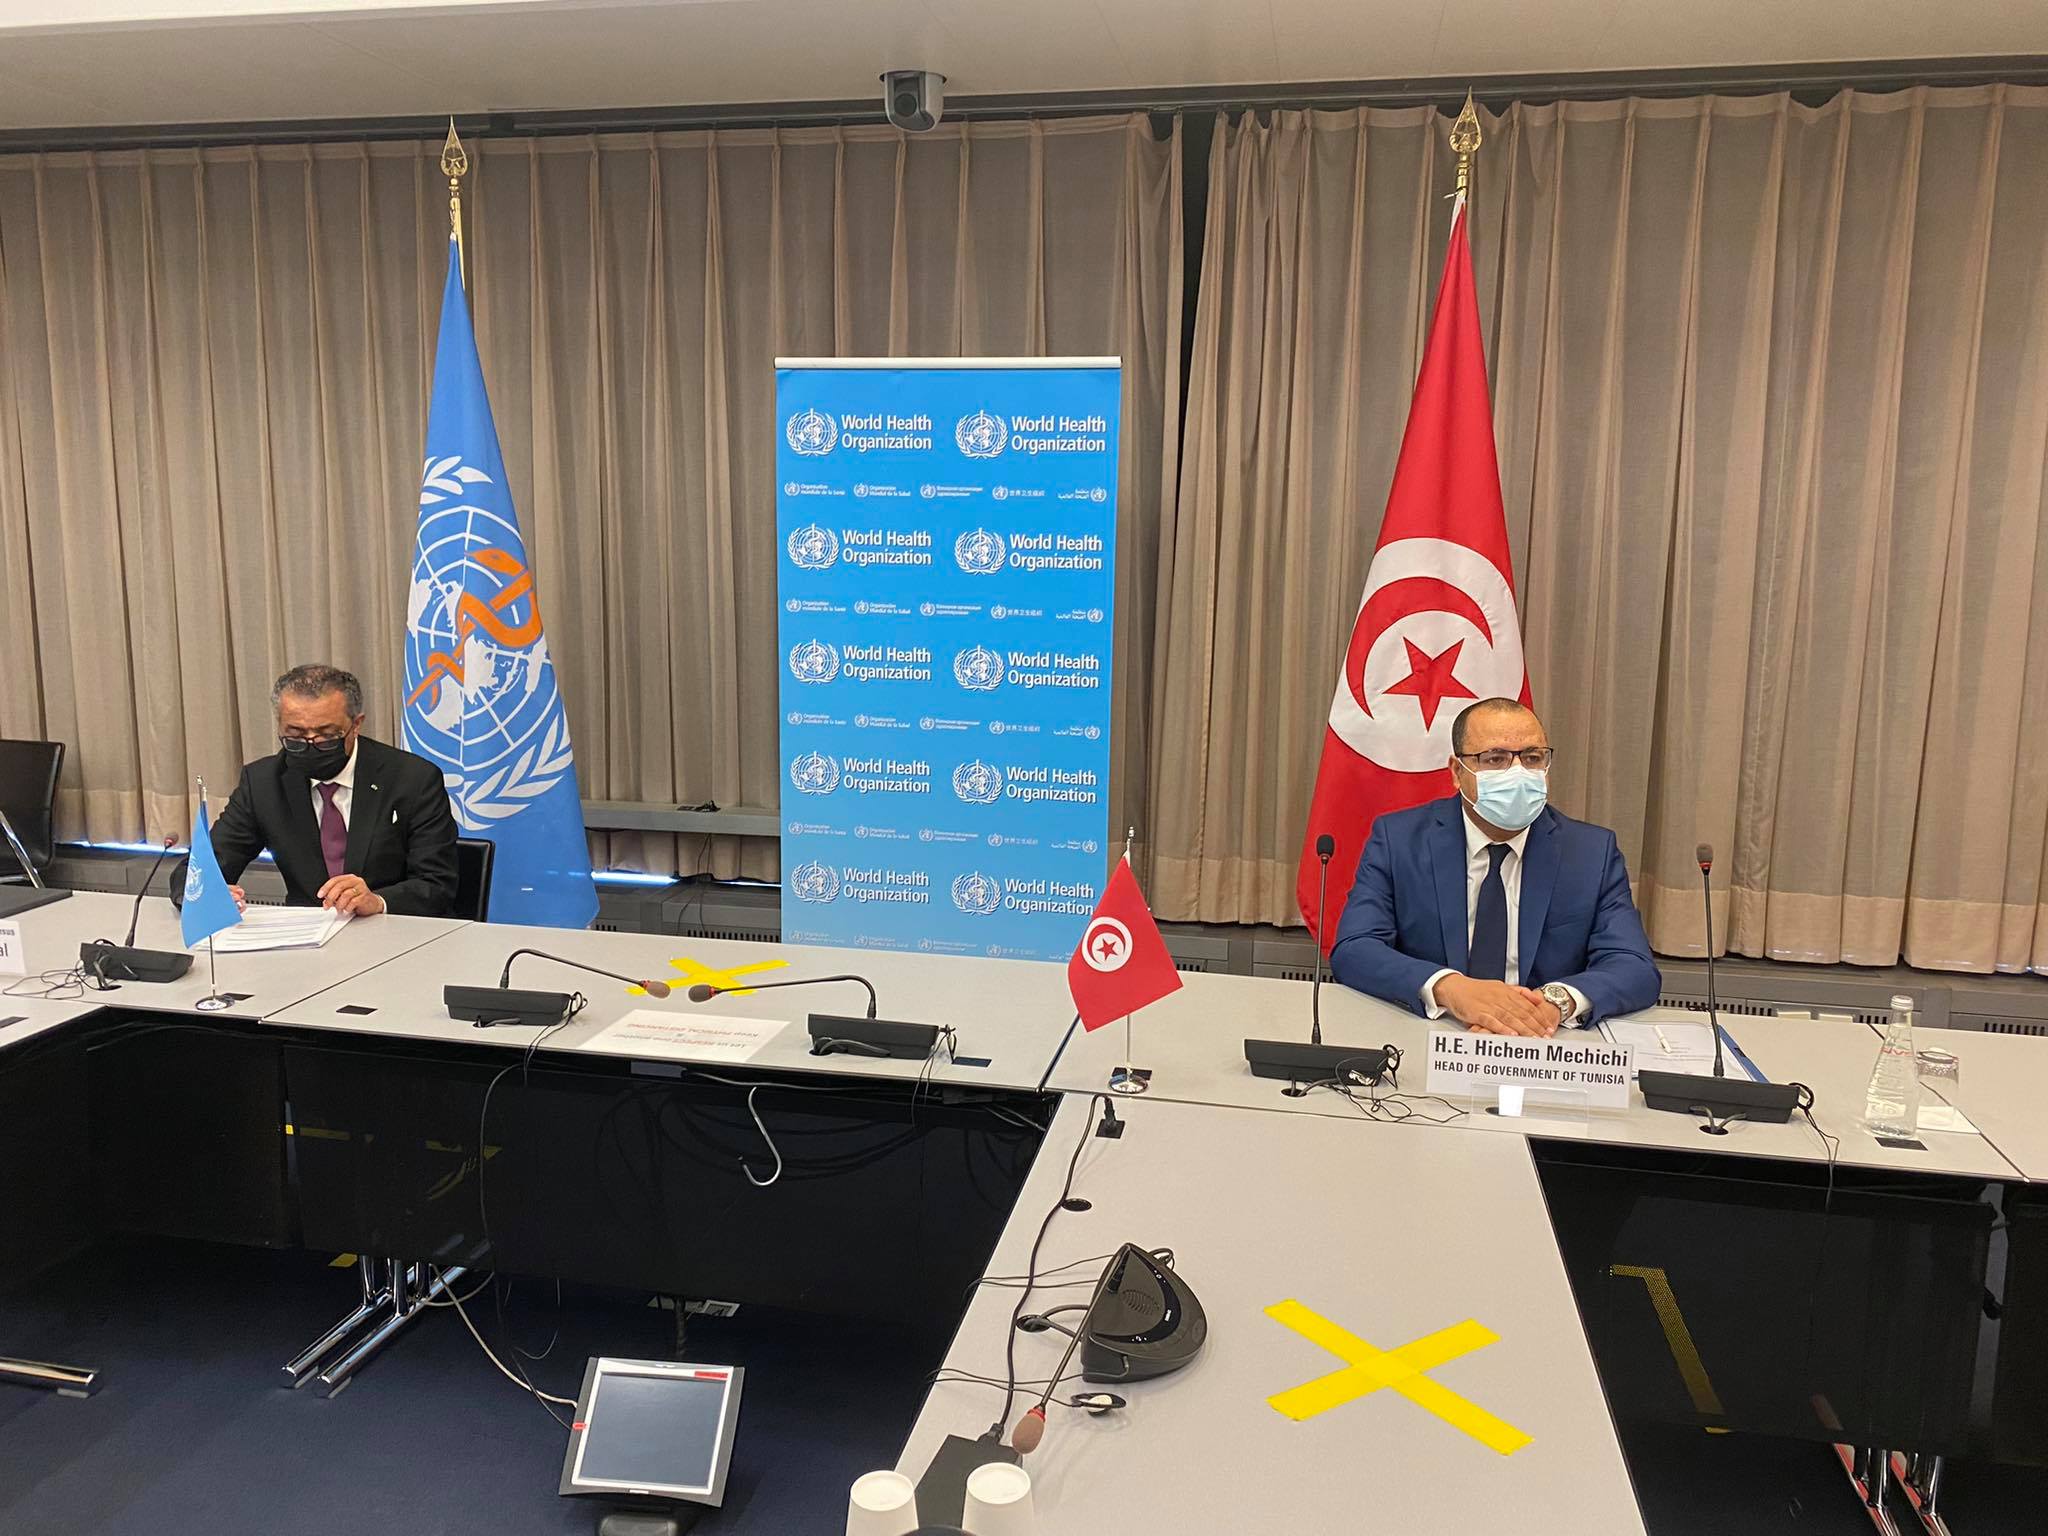 Suite à la visite de Mechichi à Genève, la Tunisie a été inscrite sur le liste de pays qui vont recevoir des doses des USA